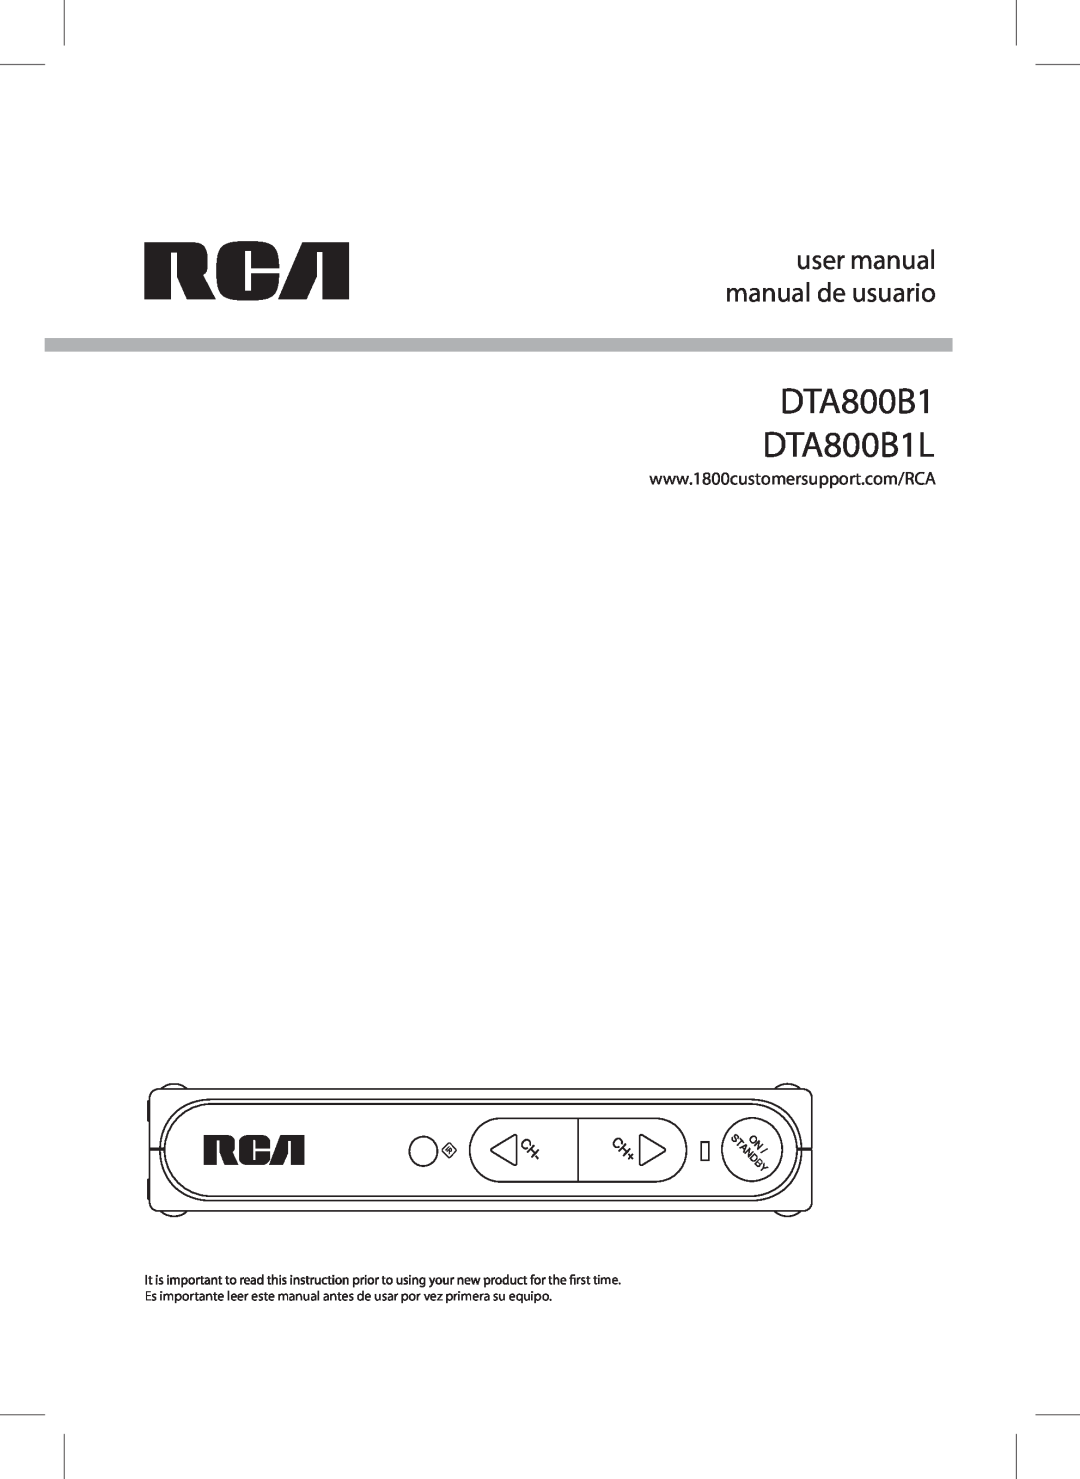 RCA 811-DTA891W030 user manual user manual manual de usuario, DTA800B1 DTA800B1L 